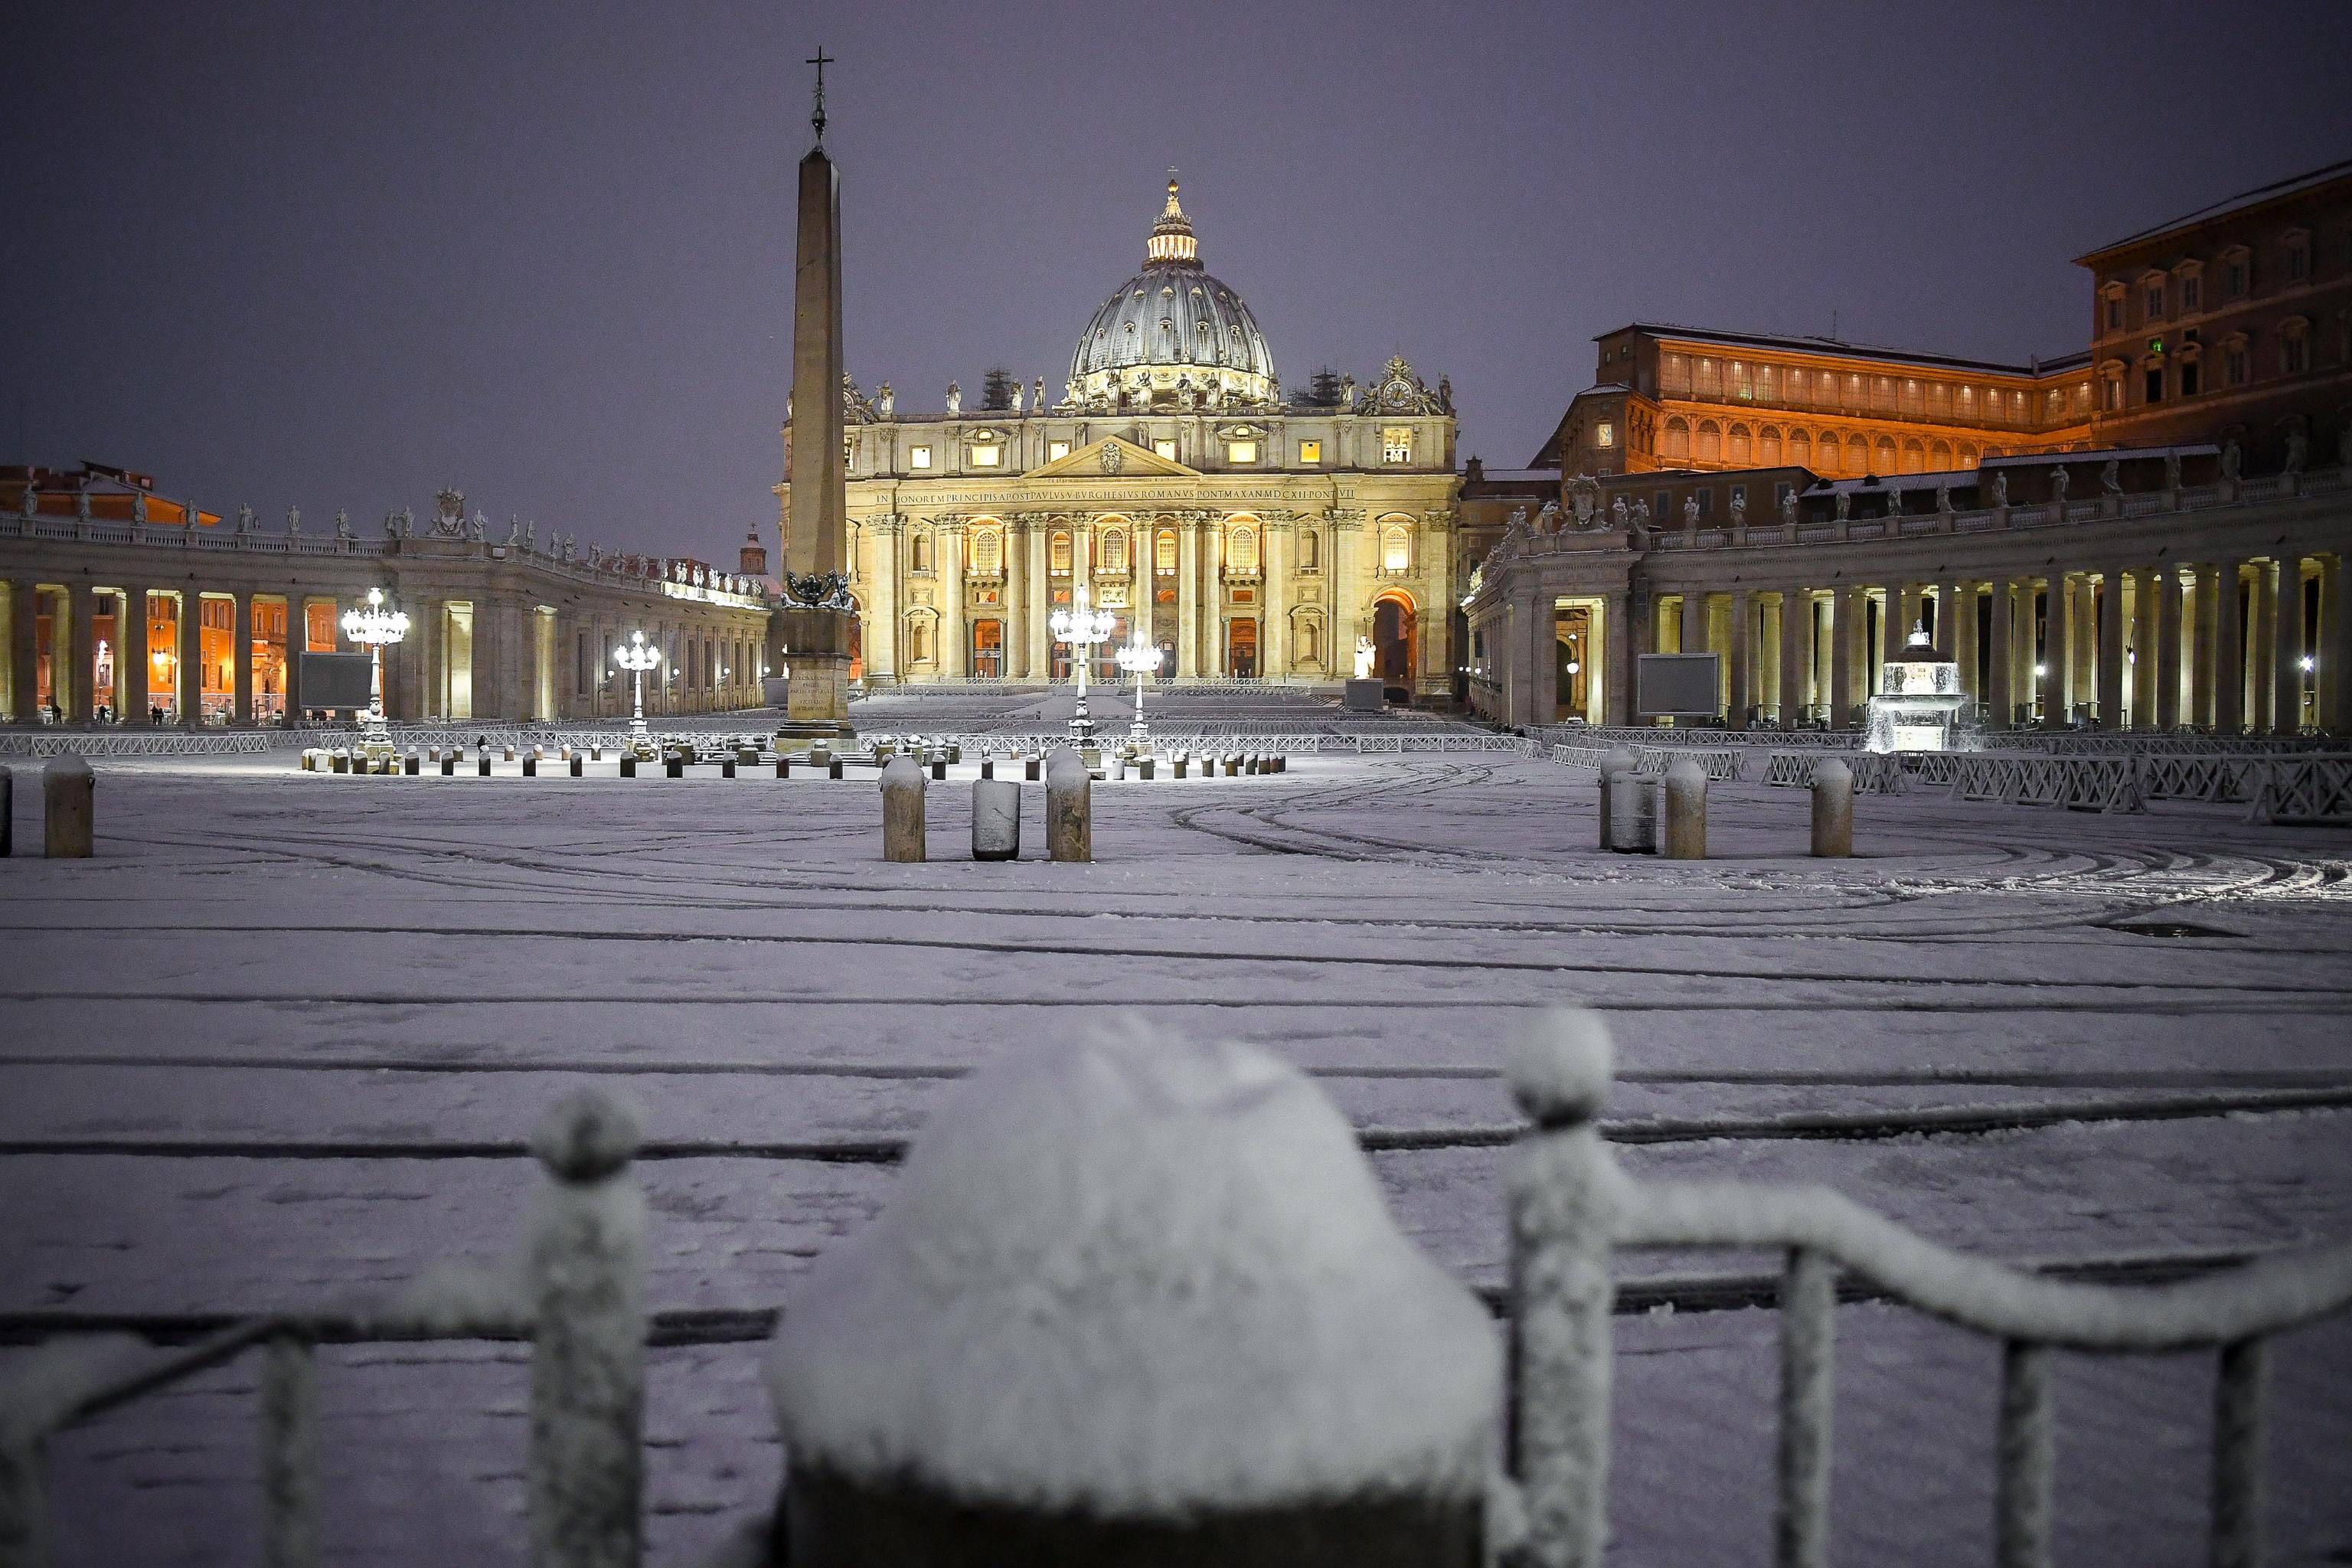 Nevicata all'alba in piazza San Pietro, Roma, 26 febbraio 2018.
ANSA/ALESSANDRO DI MEO